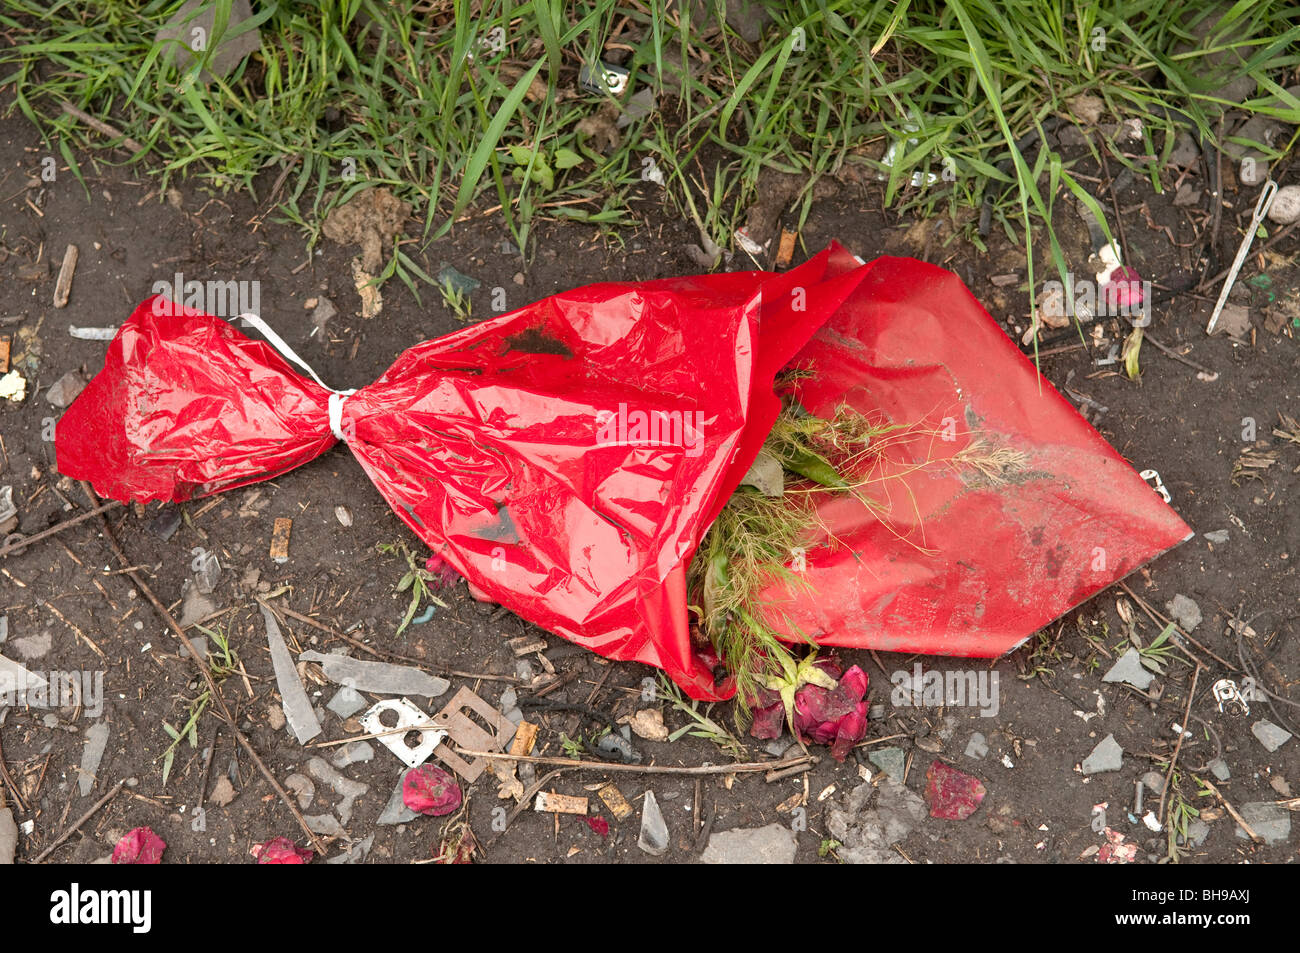 Les fleurs mortes piétiné dans la boue Ploiesti Roumanie Europe de l'Est Banque D'Images